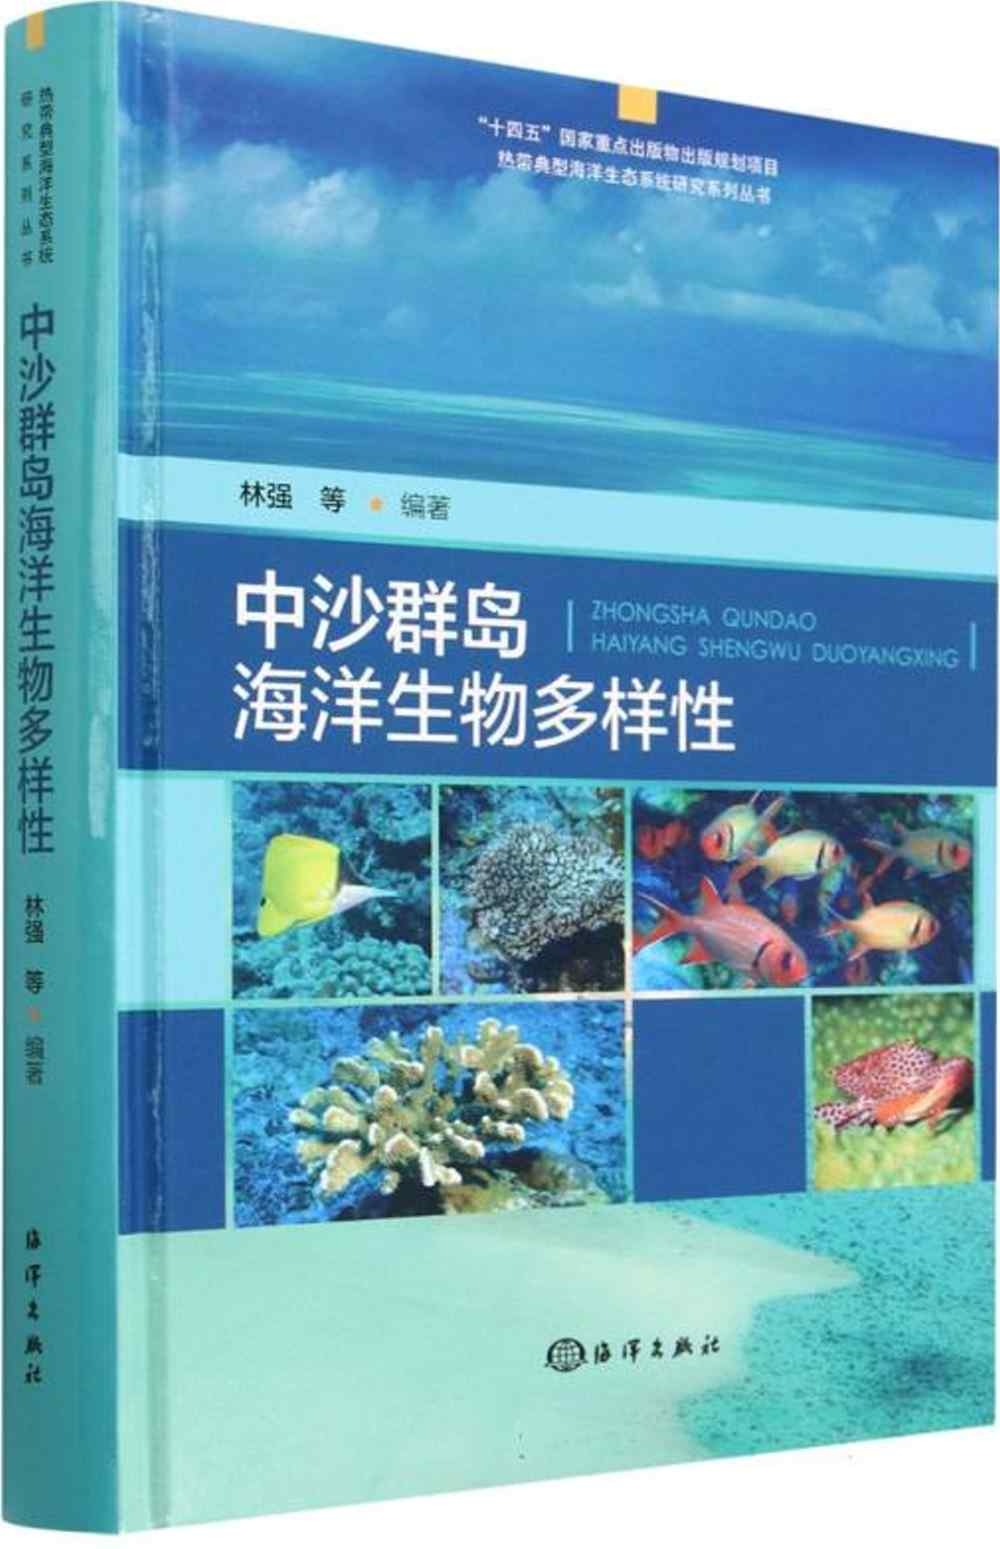 中沙群島海洋生物多樣性